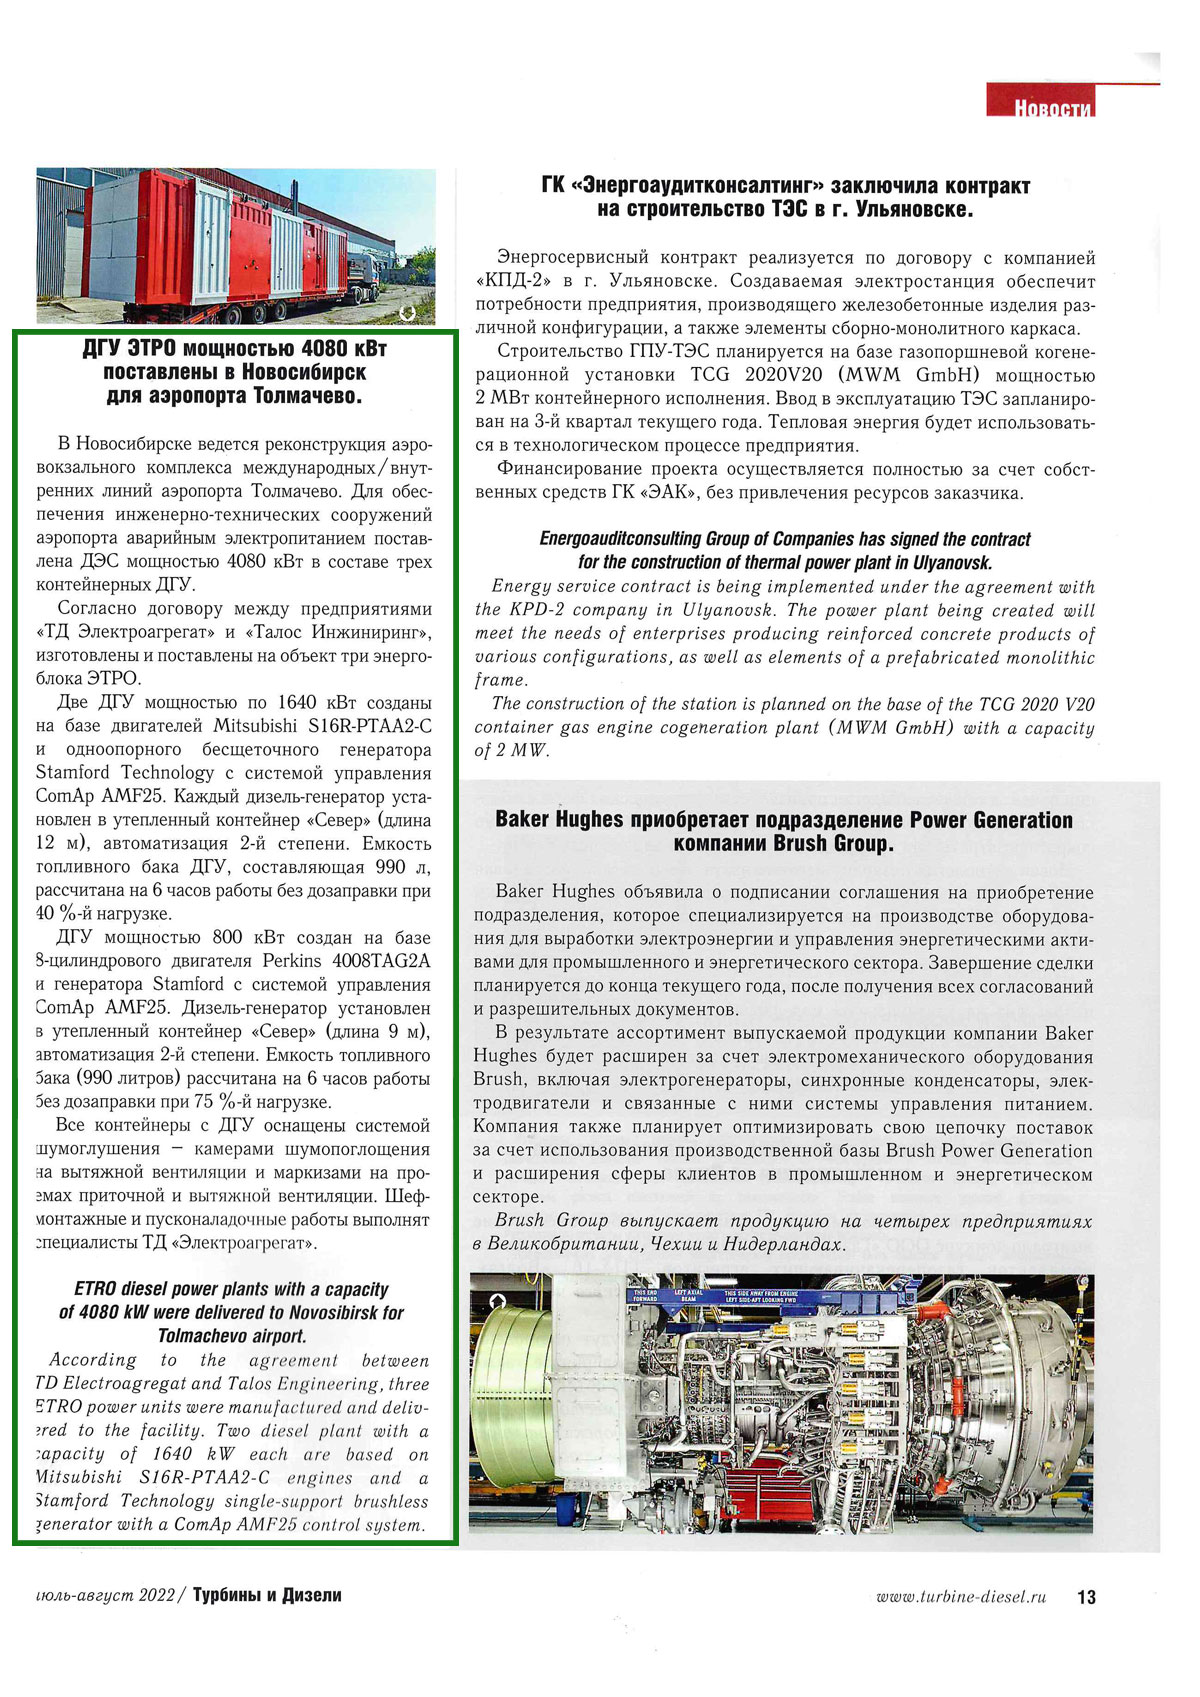 Страница журнала Турбины и дизели июдь-август 2022. поставка трех ДГУ аэропорту Толмачево. Новосибирск